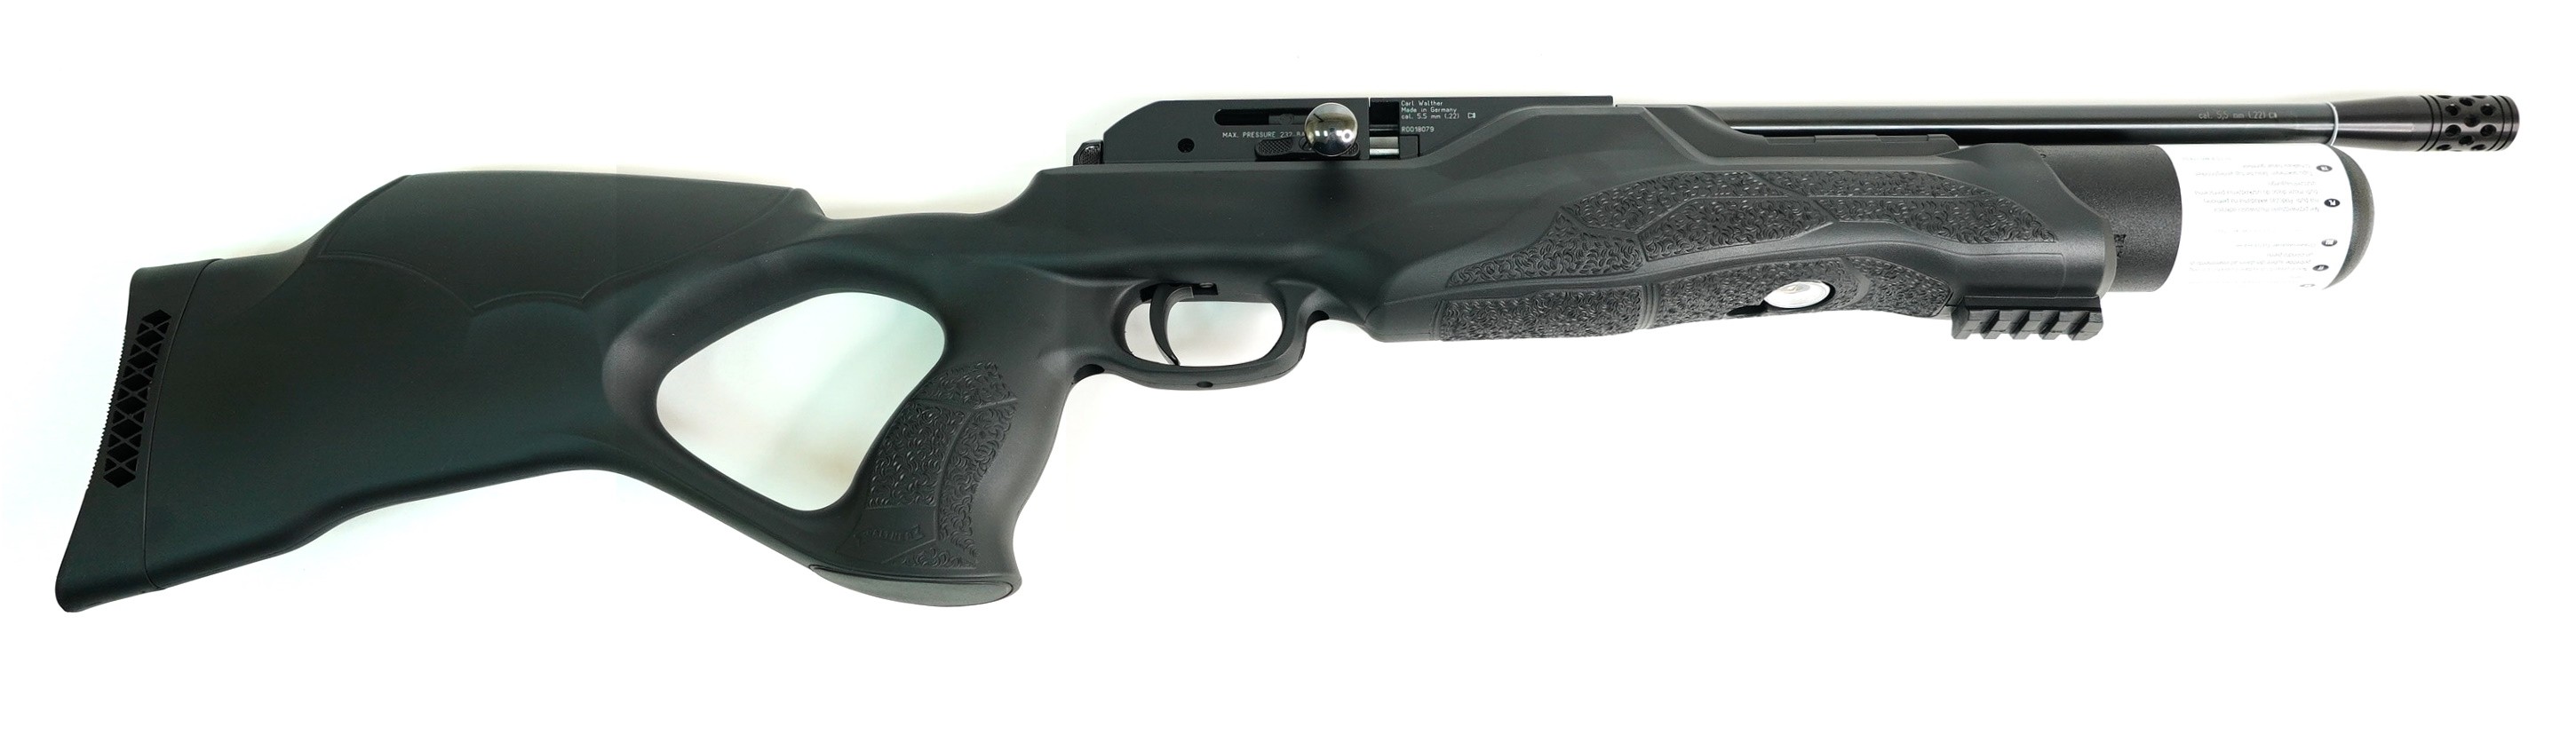 Пневматическая винтовка Umarex Walther Rotex RM8 Varmint 5,5 мм (PCP, 3 Дж), изображение 7